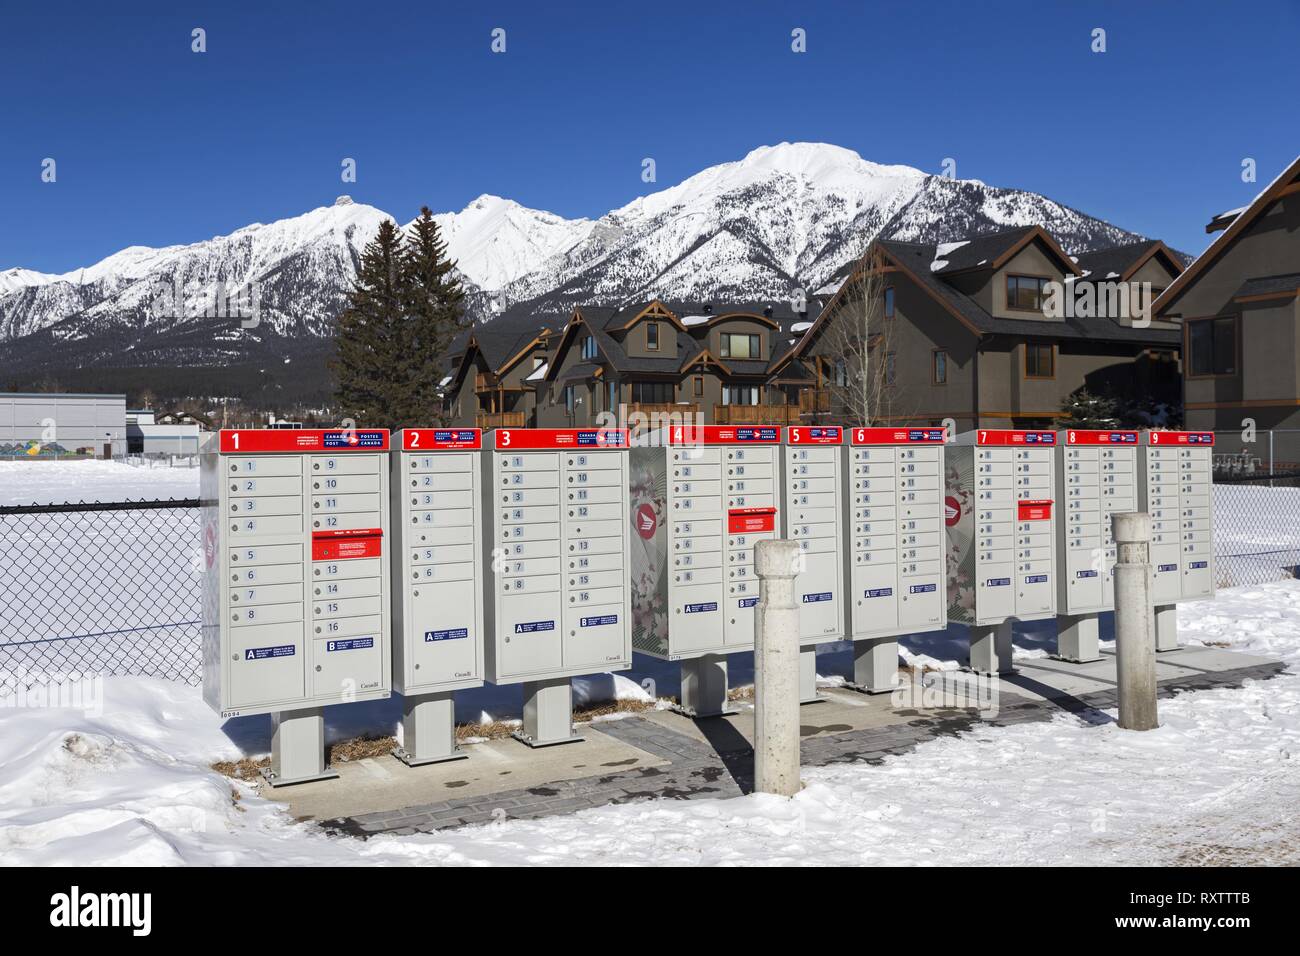 Une rangée de boîtes aux lettres rouges de Postes Canada en milieu rural Town Canmore Alberta au pied des montagnes Rocheuses canadiennes, près de Banff National Park Banque D'Images